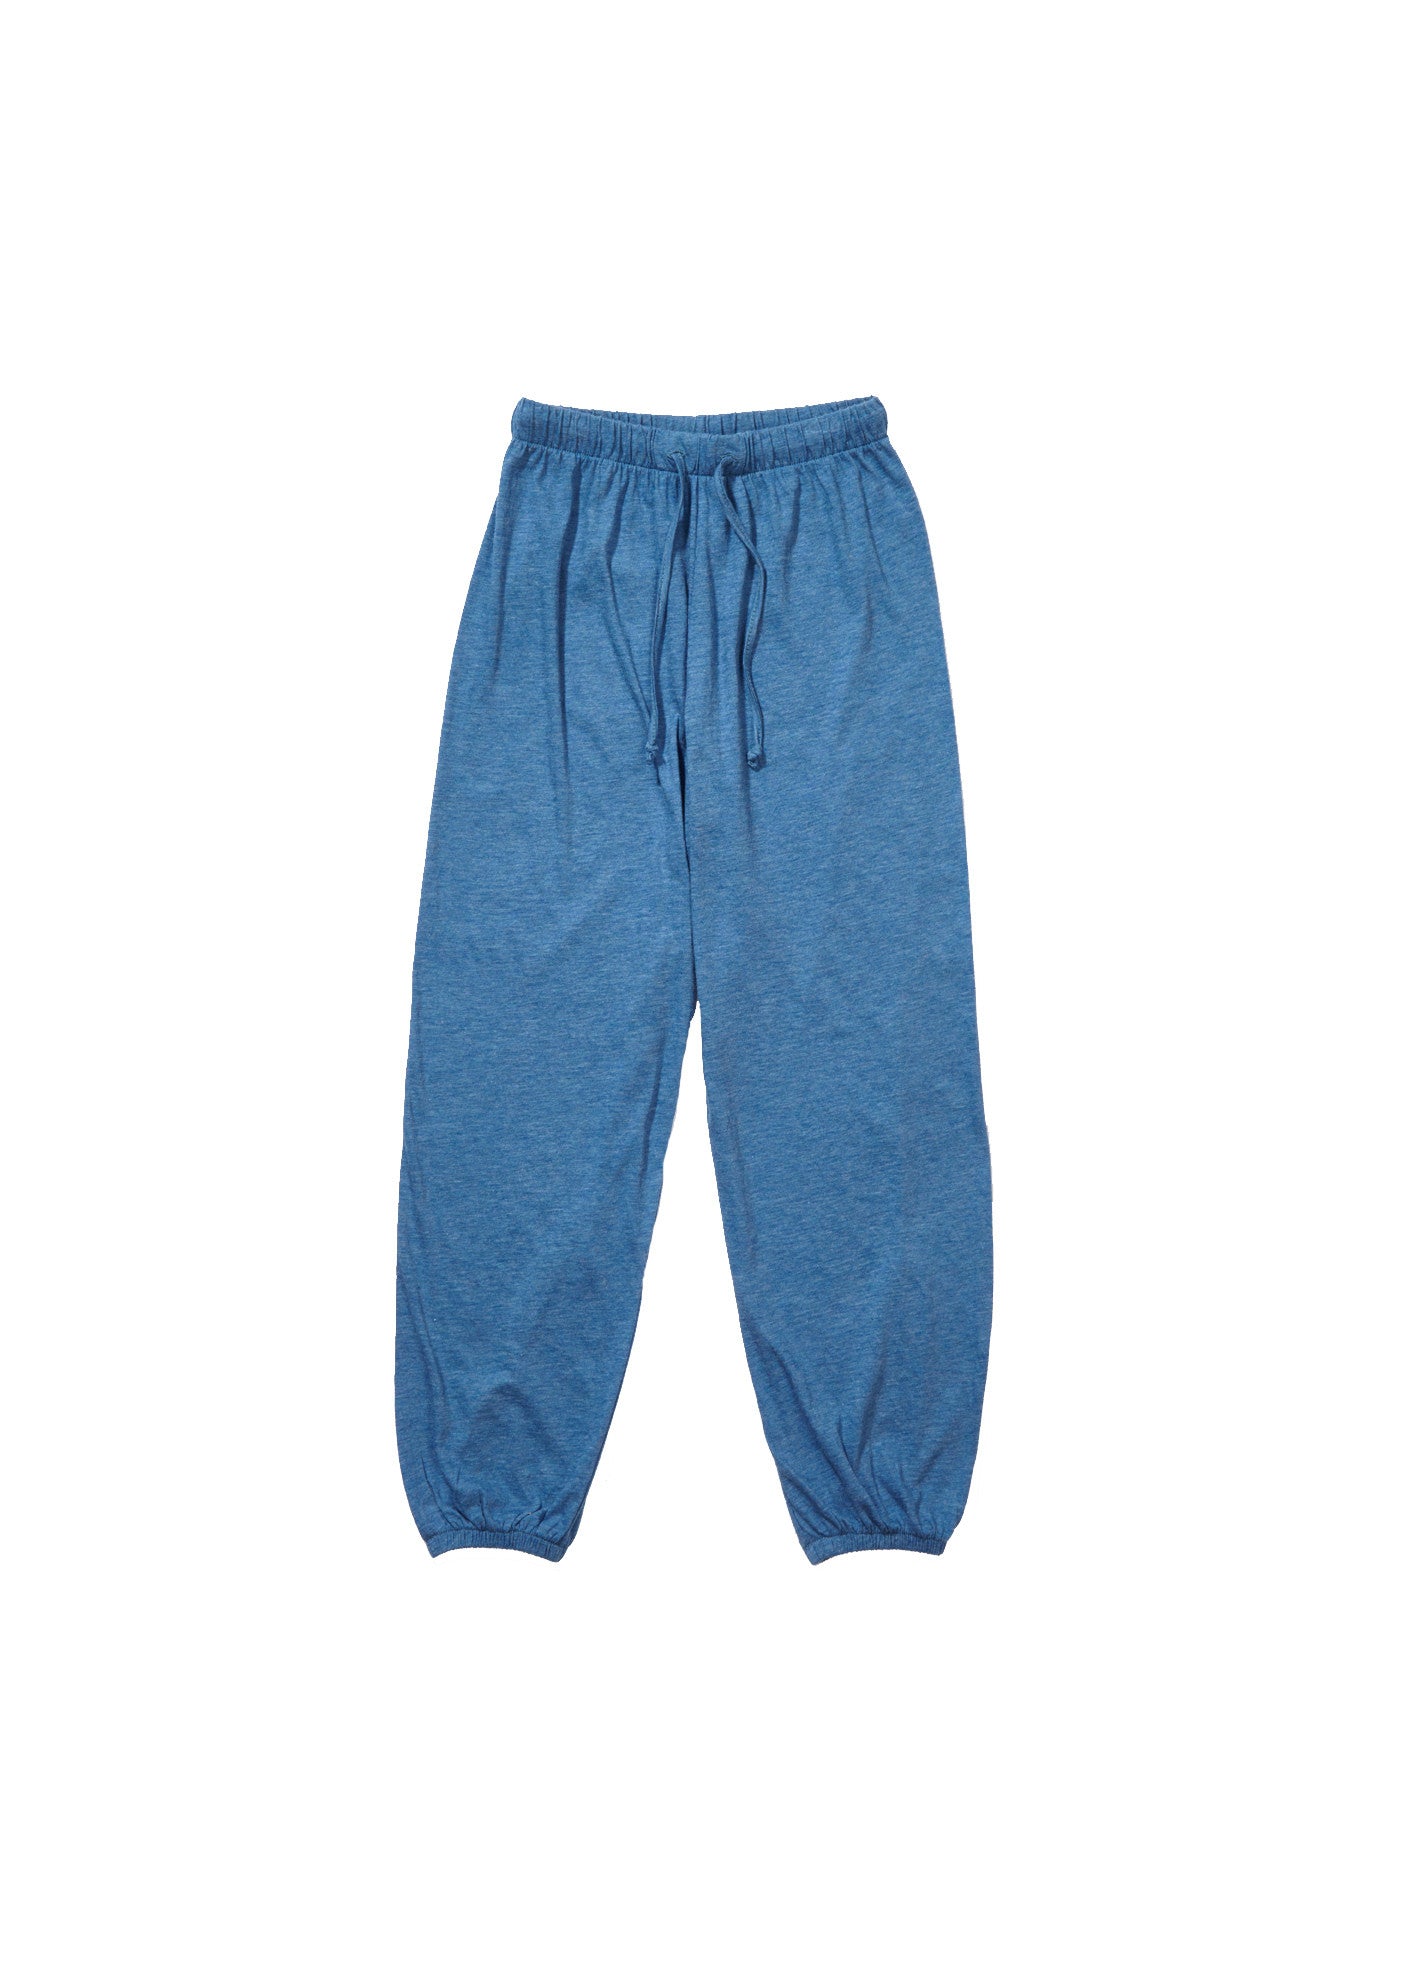 Boys & Girls Blue Jersey Trousers